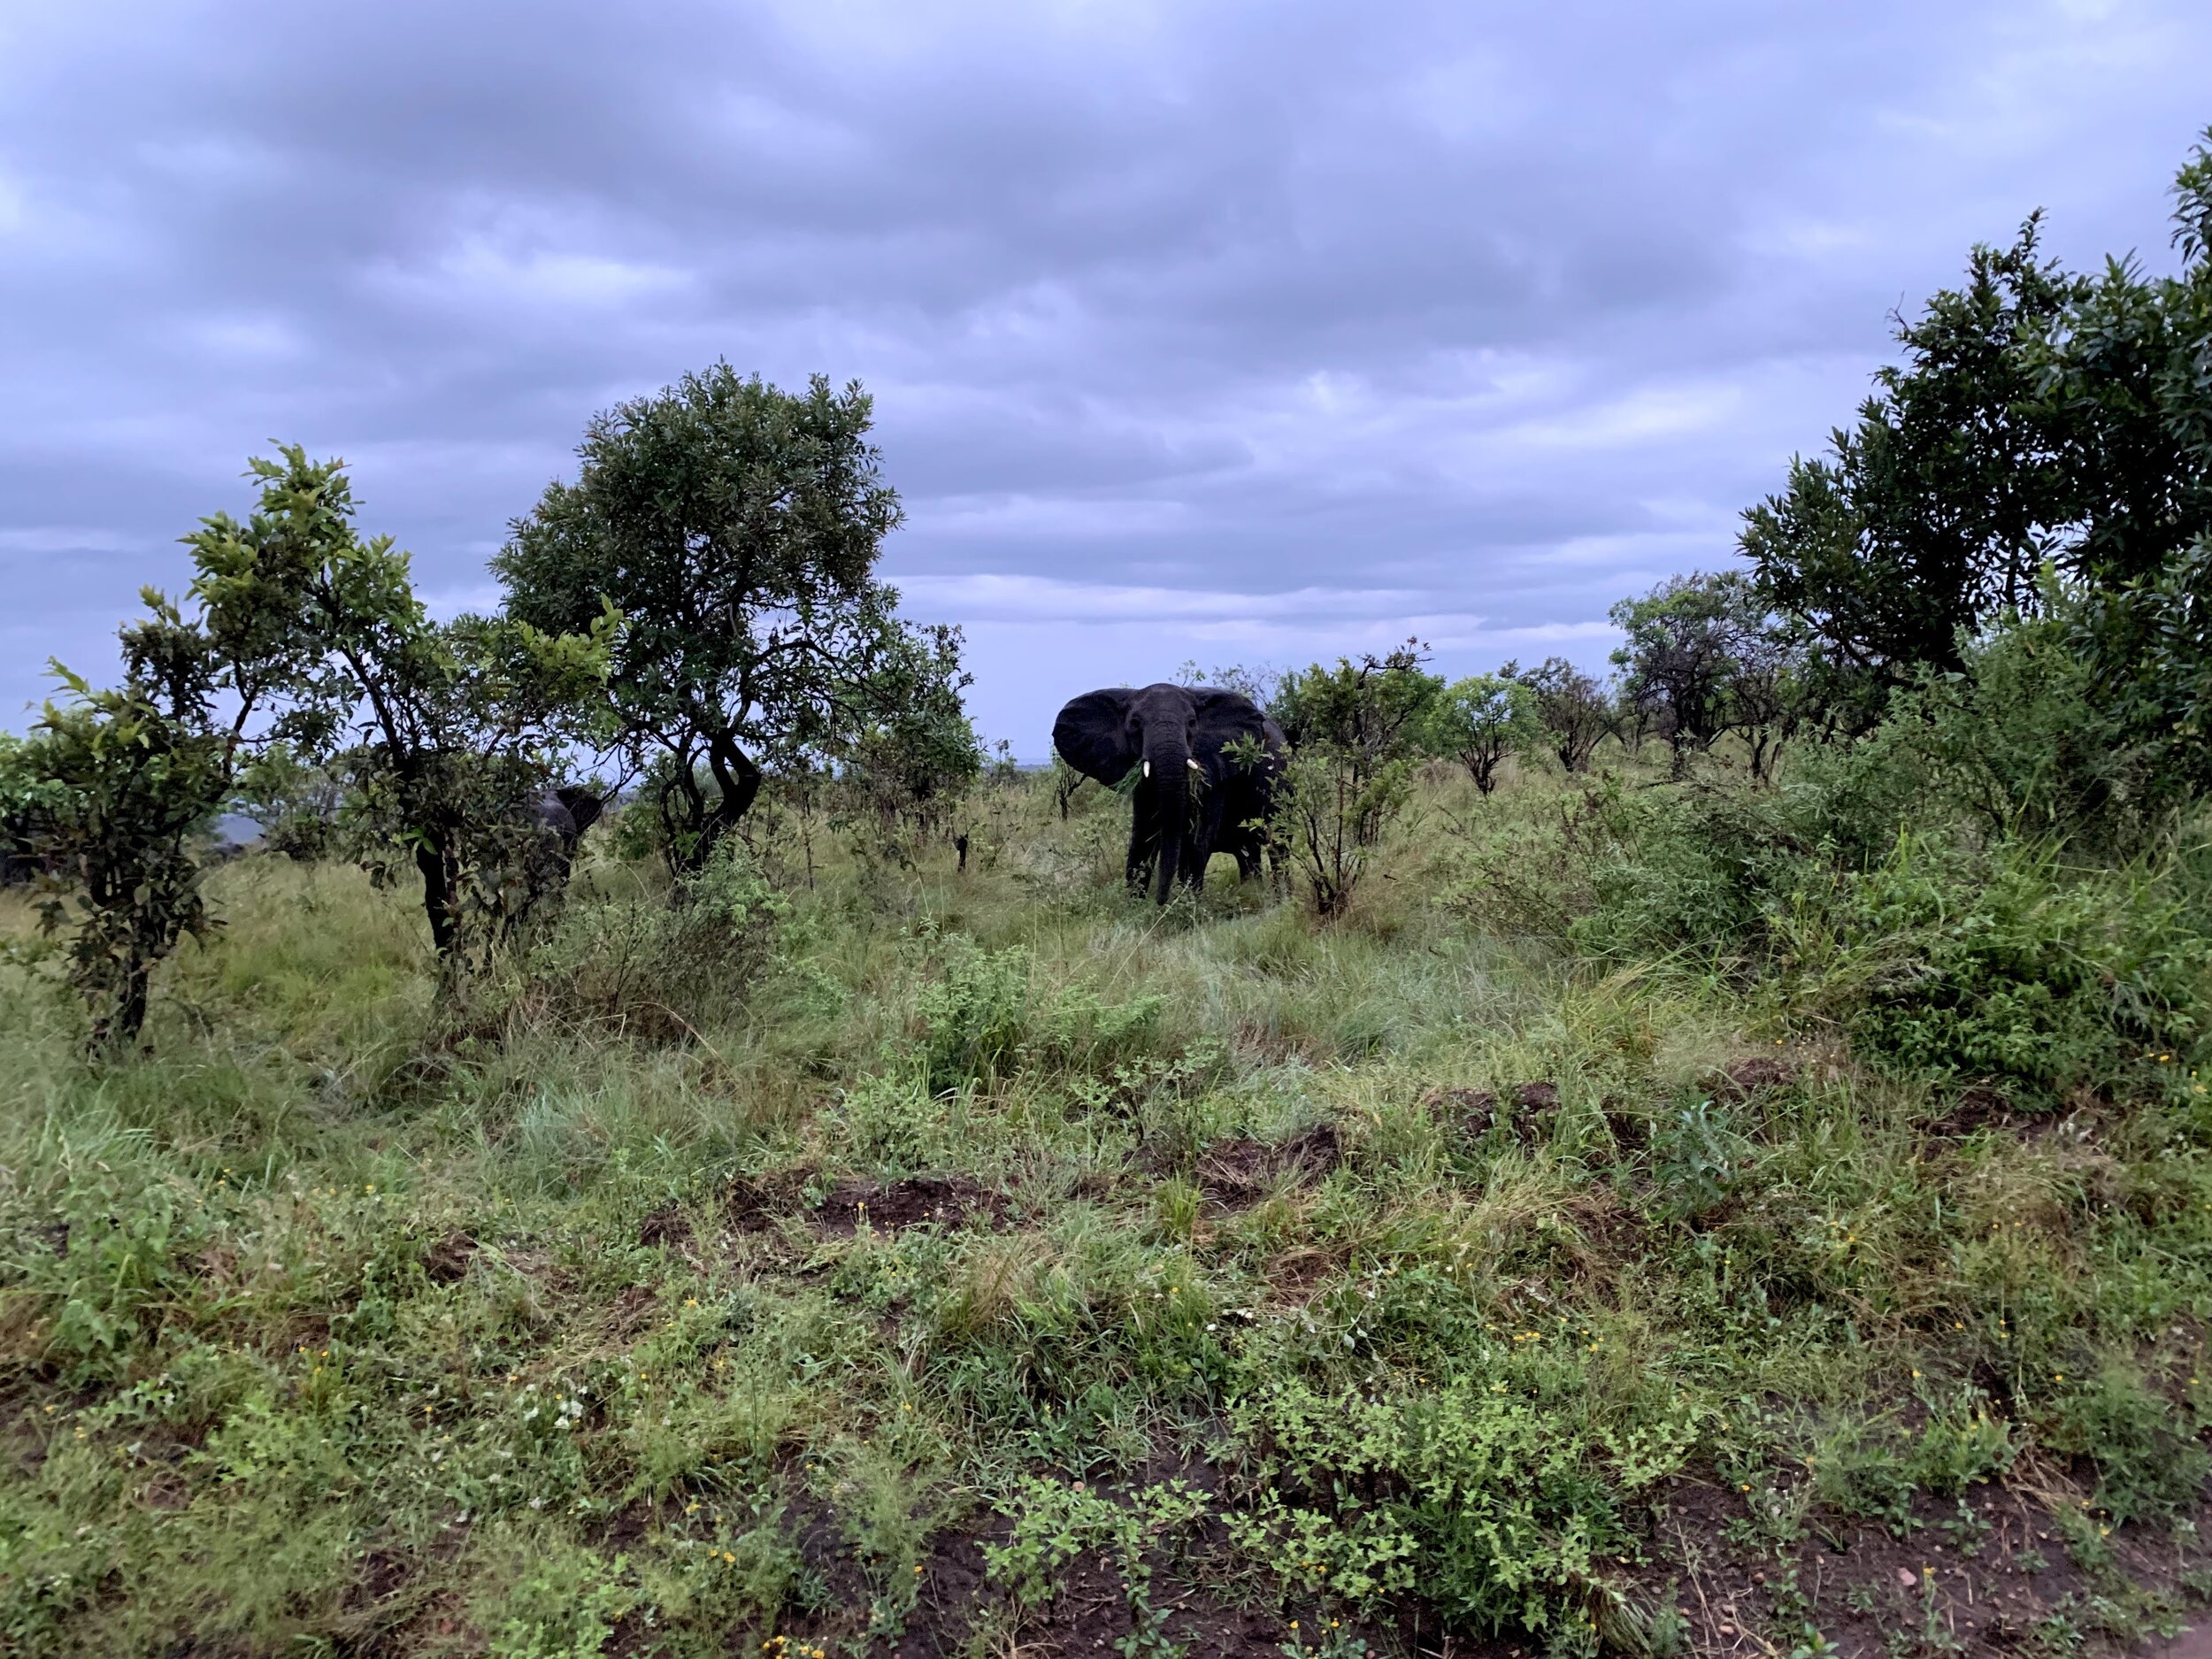  Extensive elephant herds in the Kogatende region 